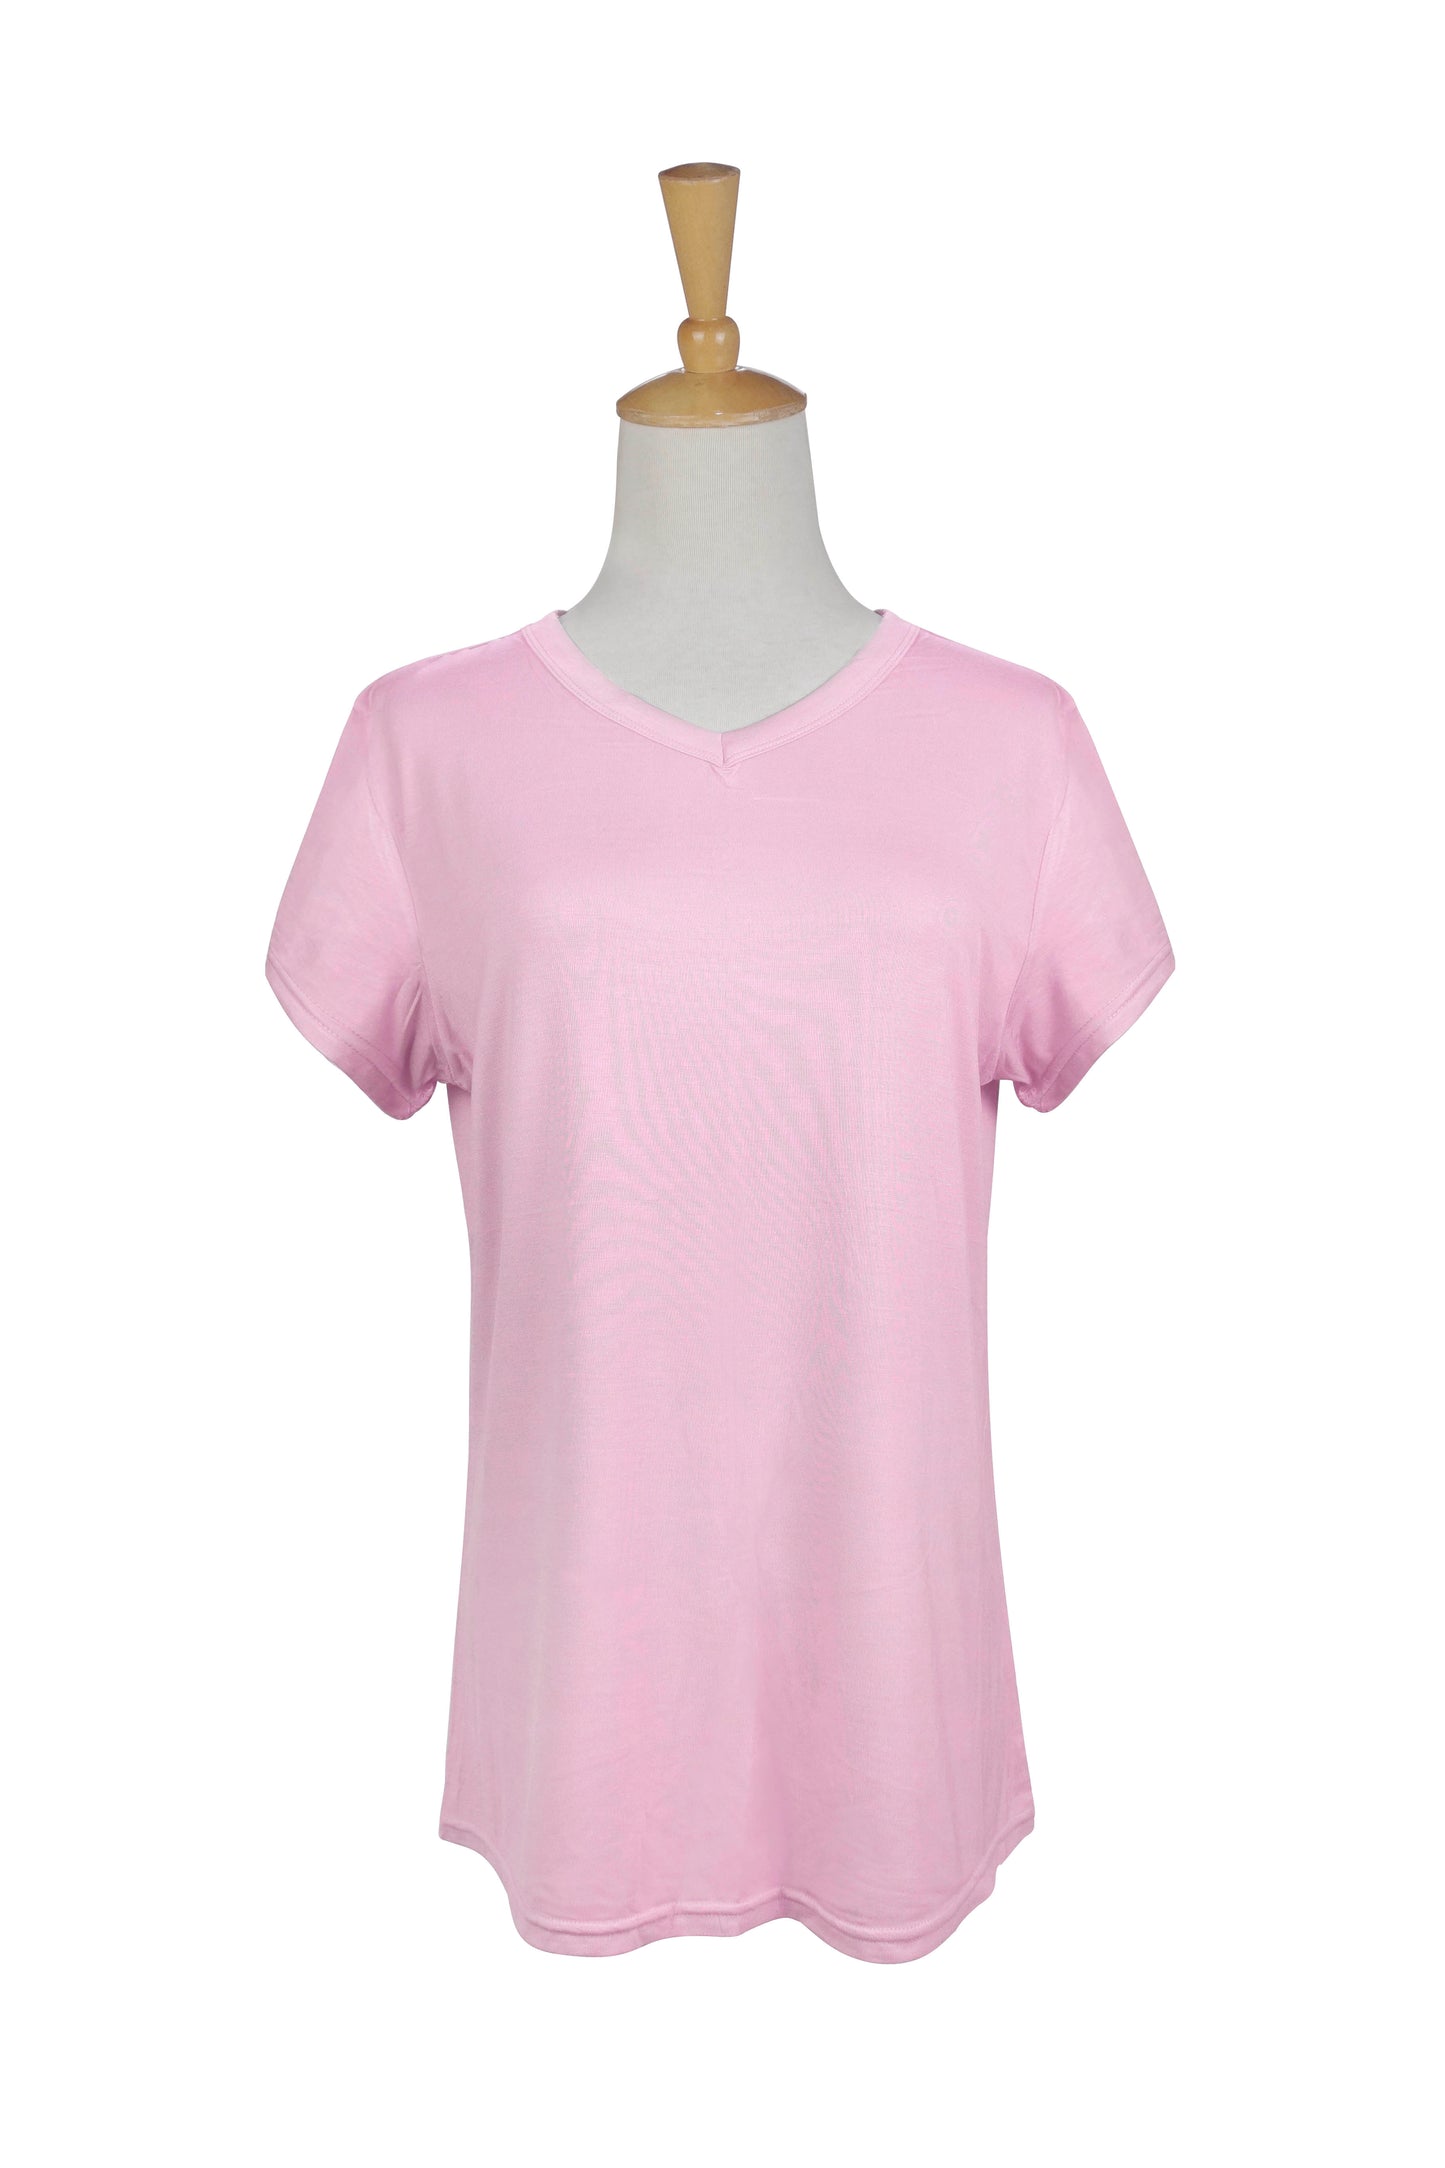 Lounge Shirt - Ashley Pink  Mirabeau   